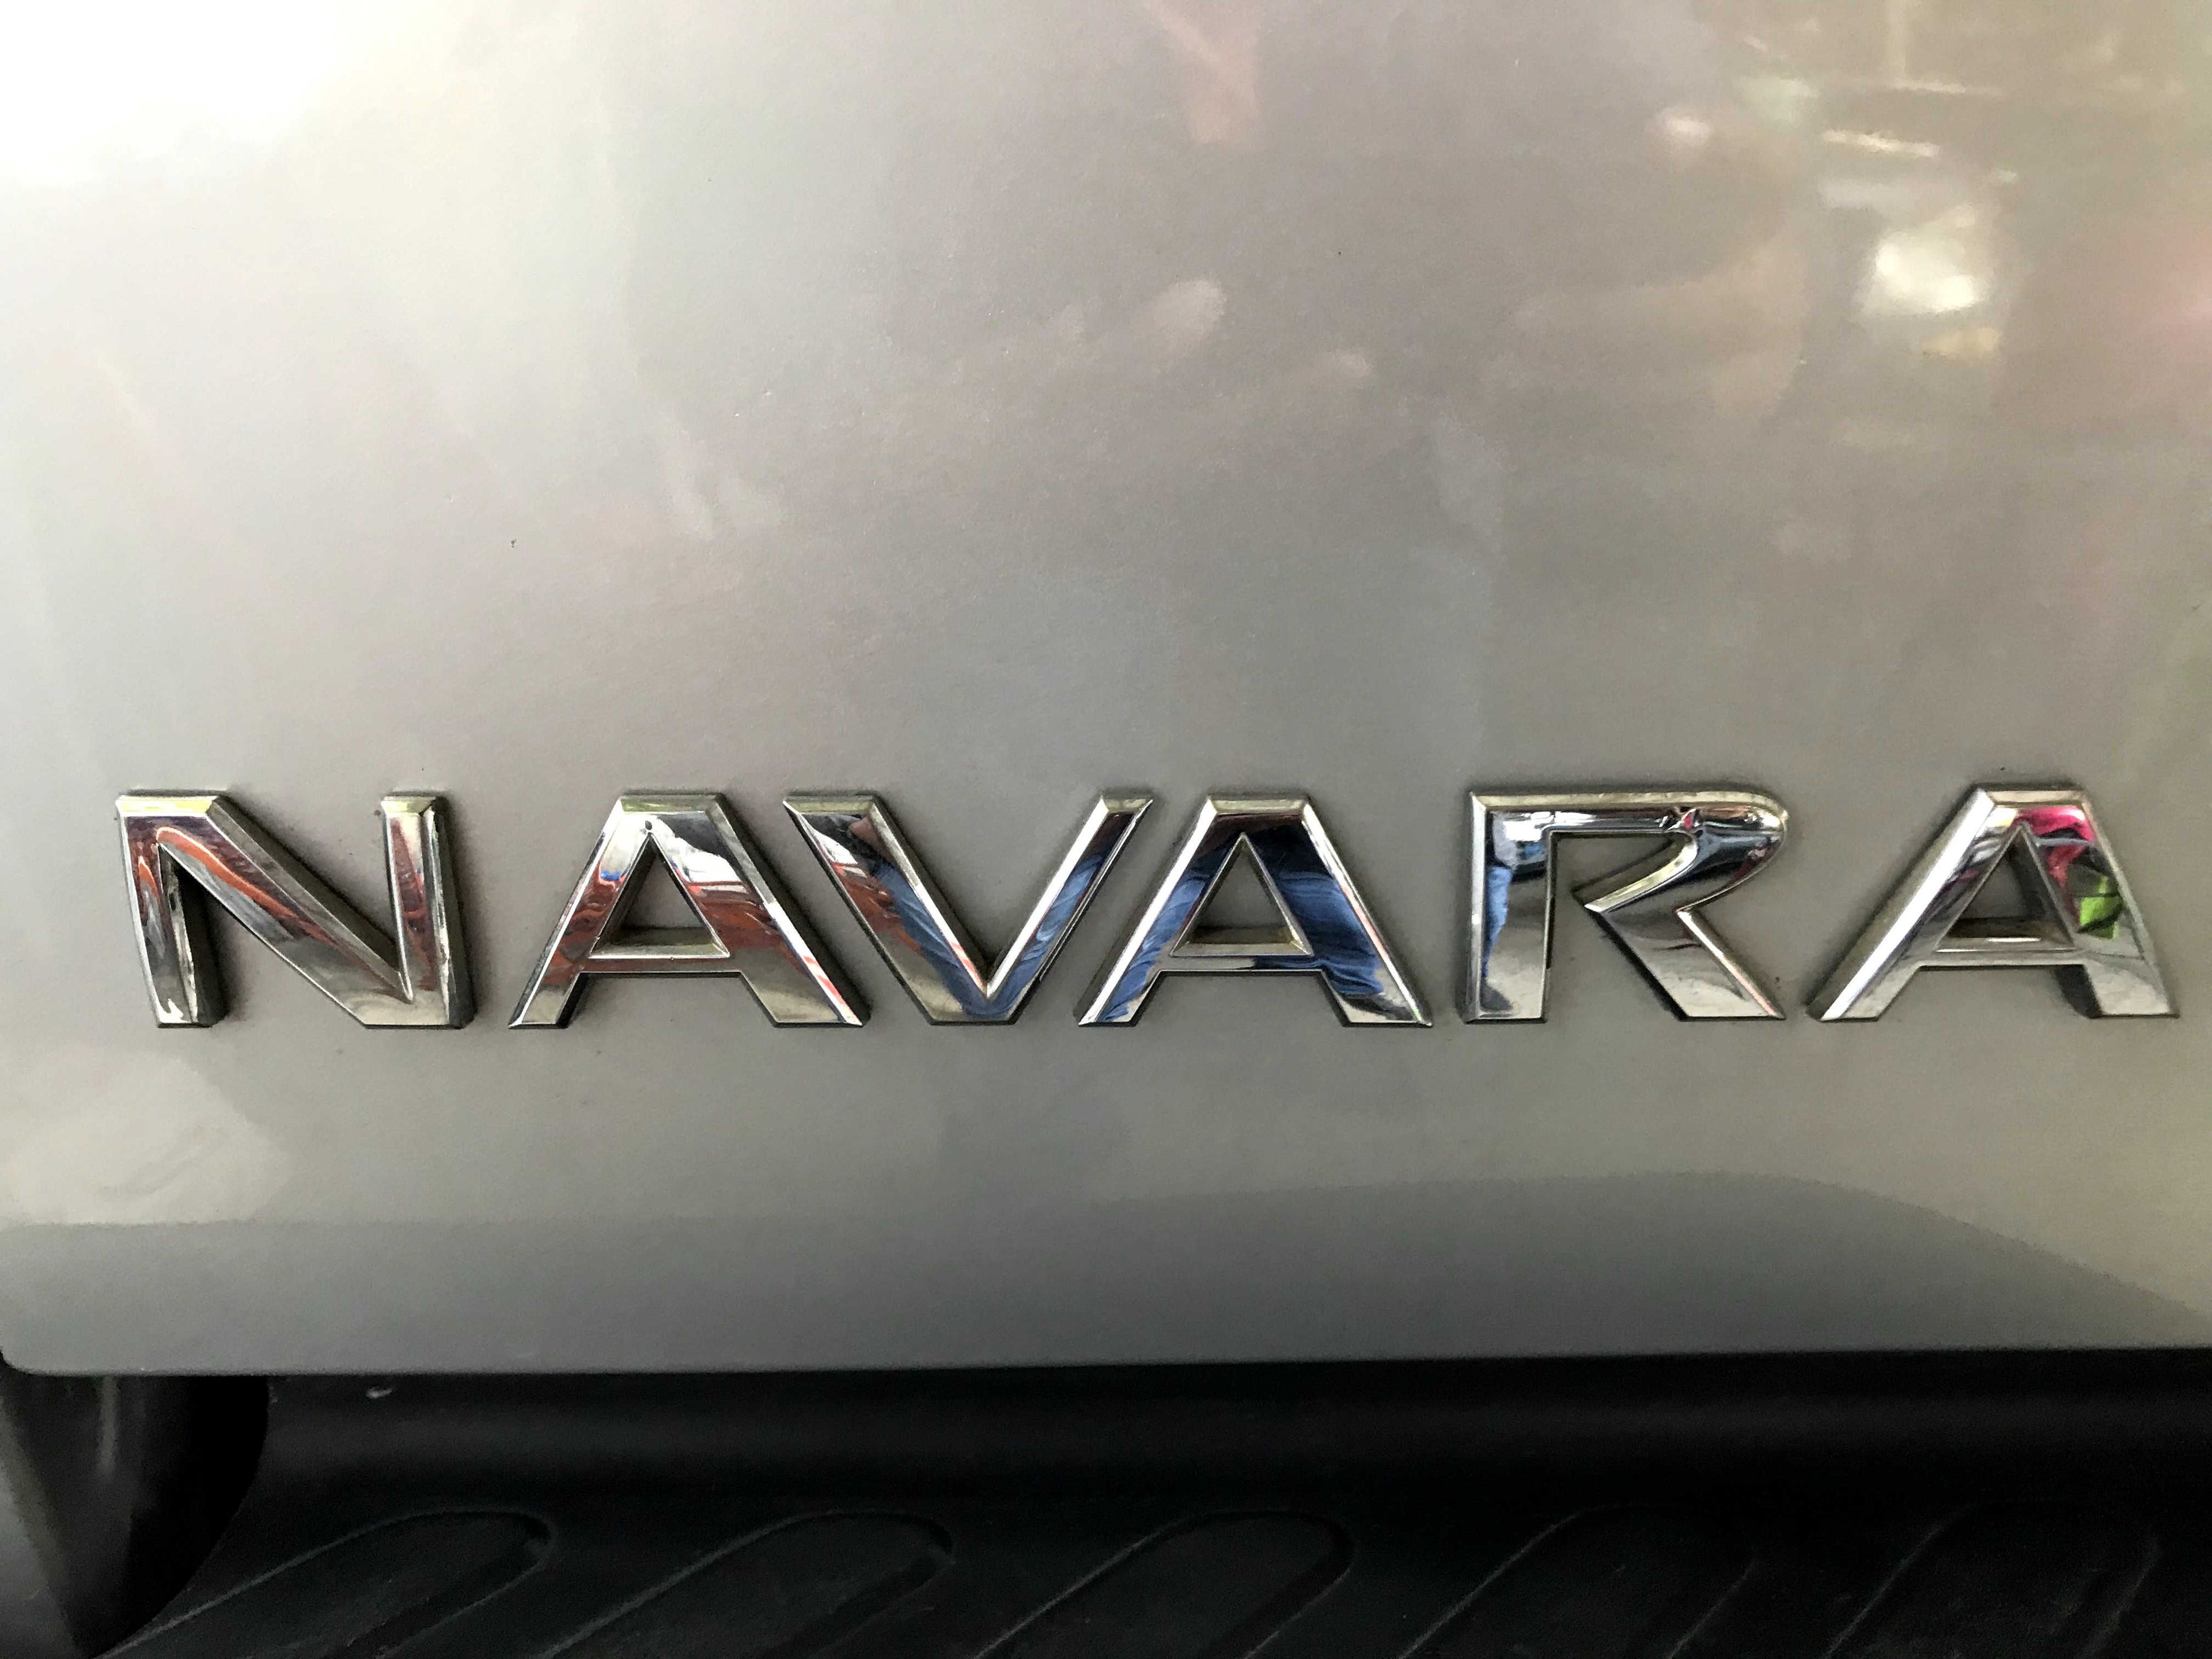 Nissan Navara 2007